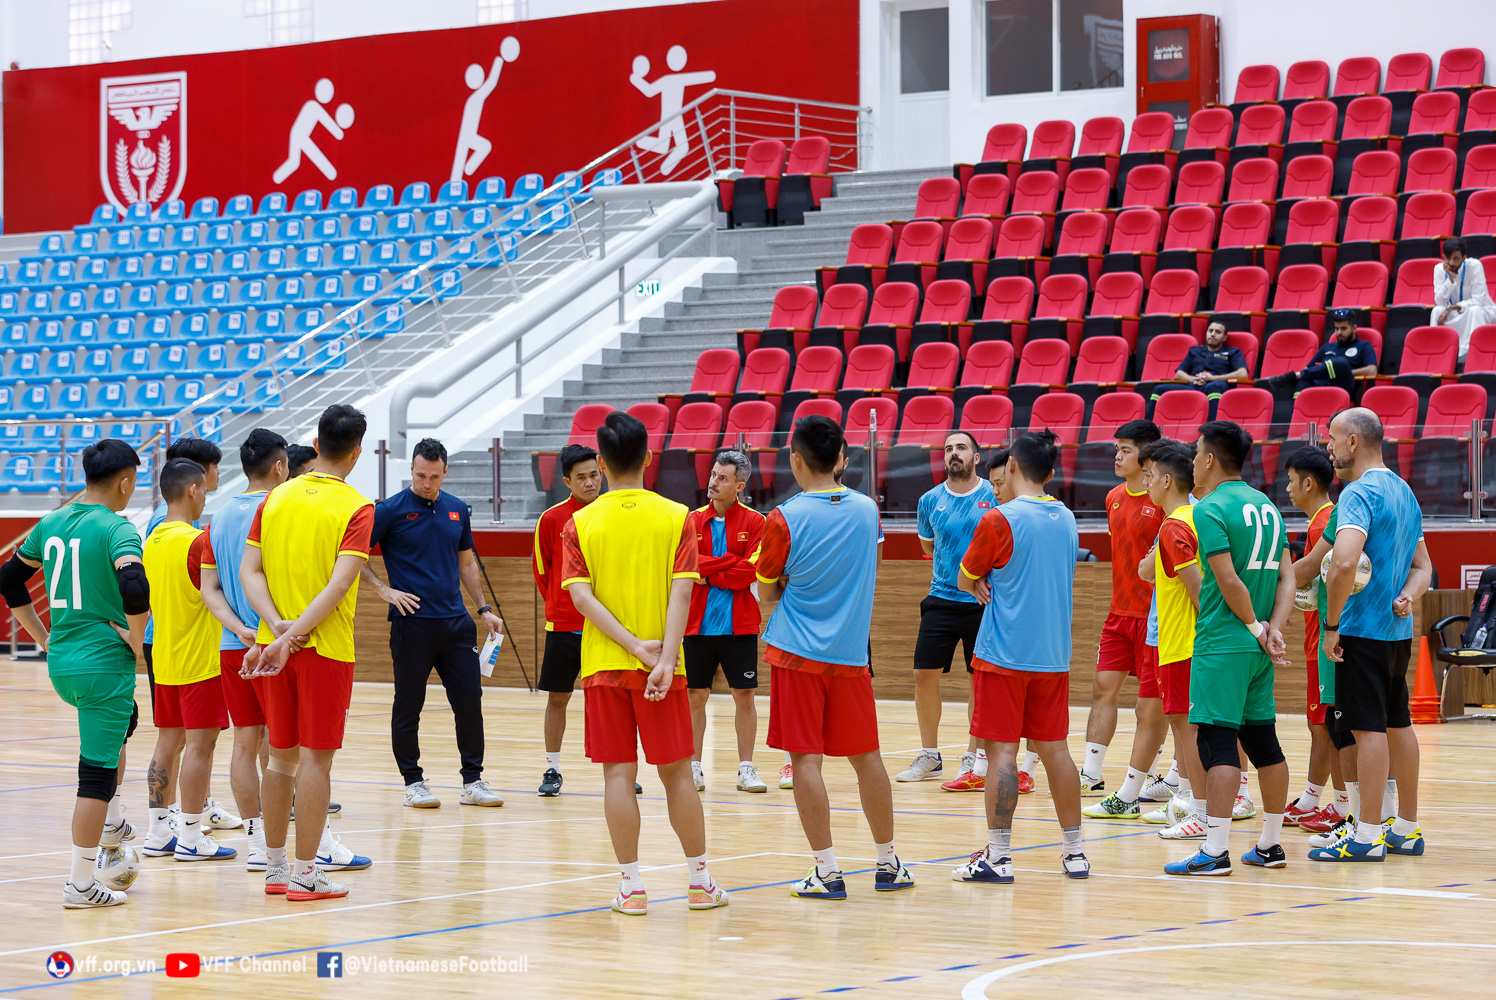 Futsal Việt Nam vs Iran, nhận định bóng đá, Futsal VN vs Iran, kèo nhà cái, Futsal Việt Nam, futsal VN, futsal Iran, keo nha cai, dự đoán bóng đá, Futsal châu Á